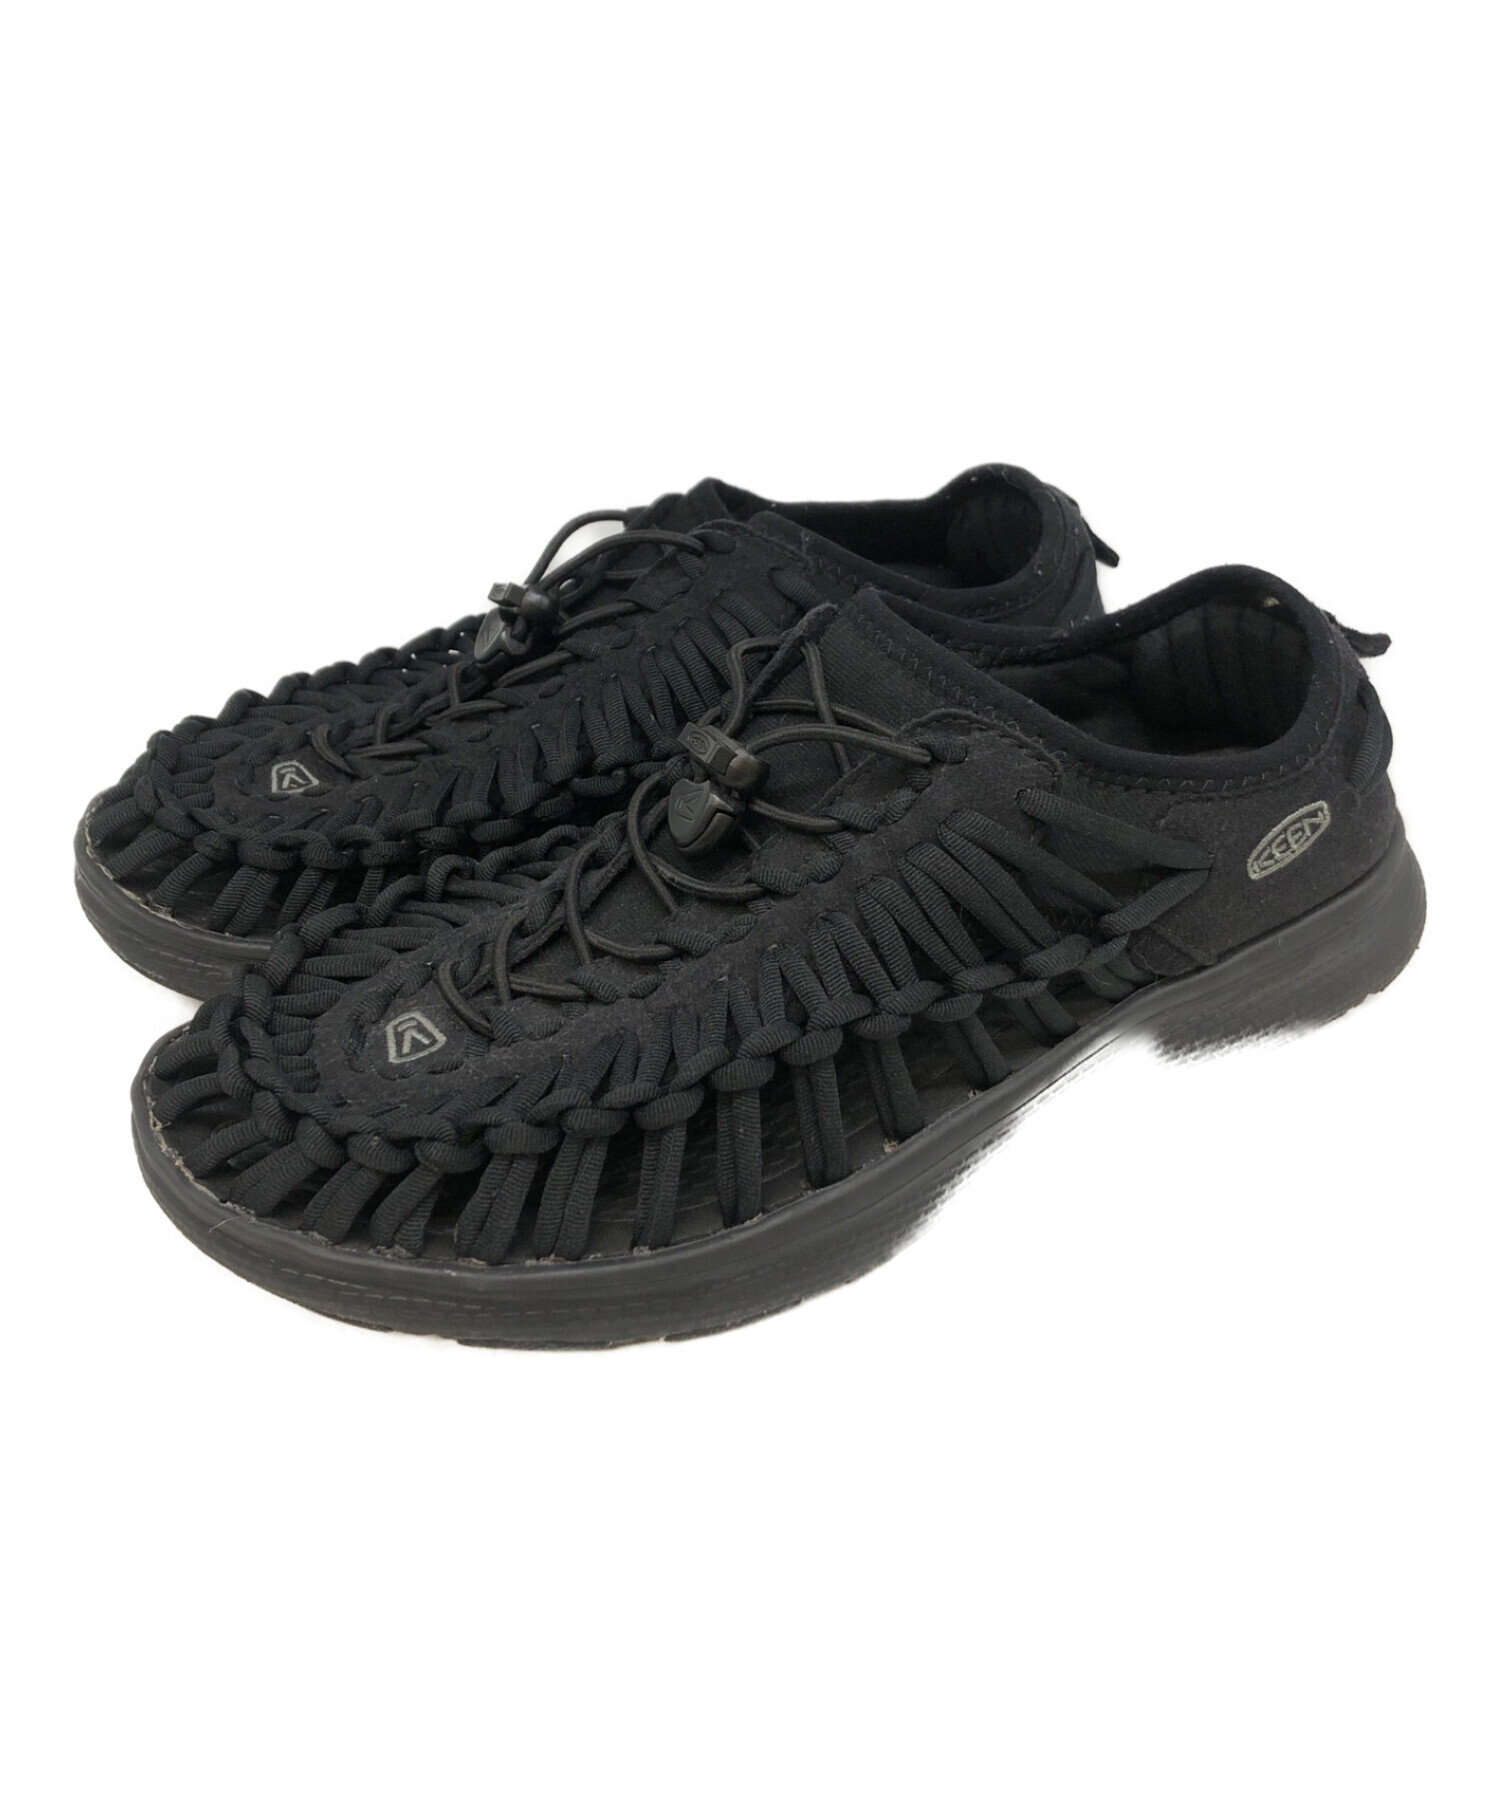 Keen キーン サンダル ブラック 26.5cm - 靴